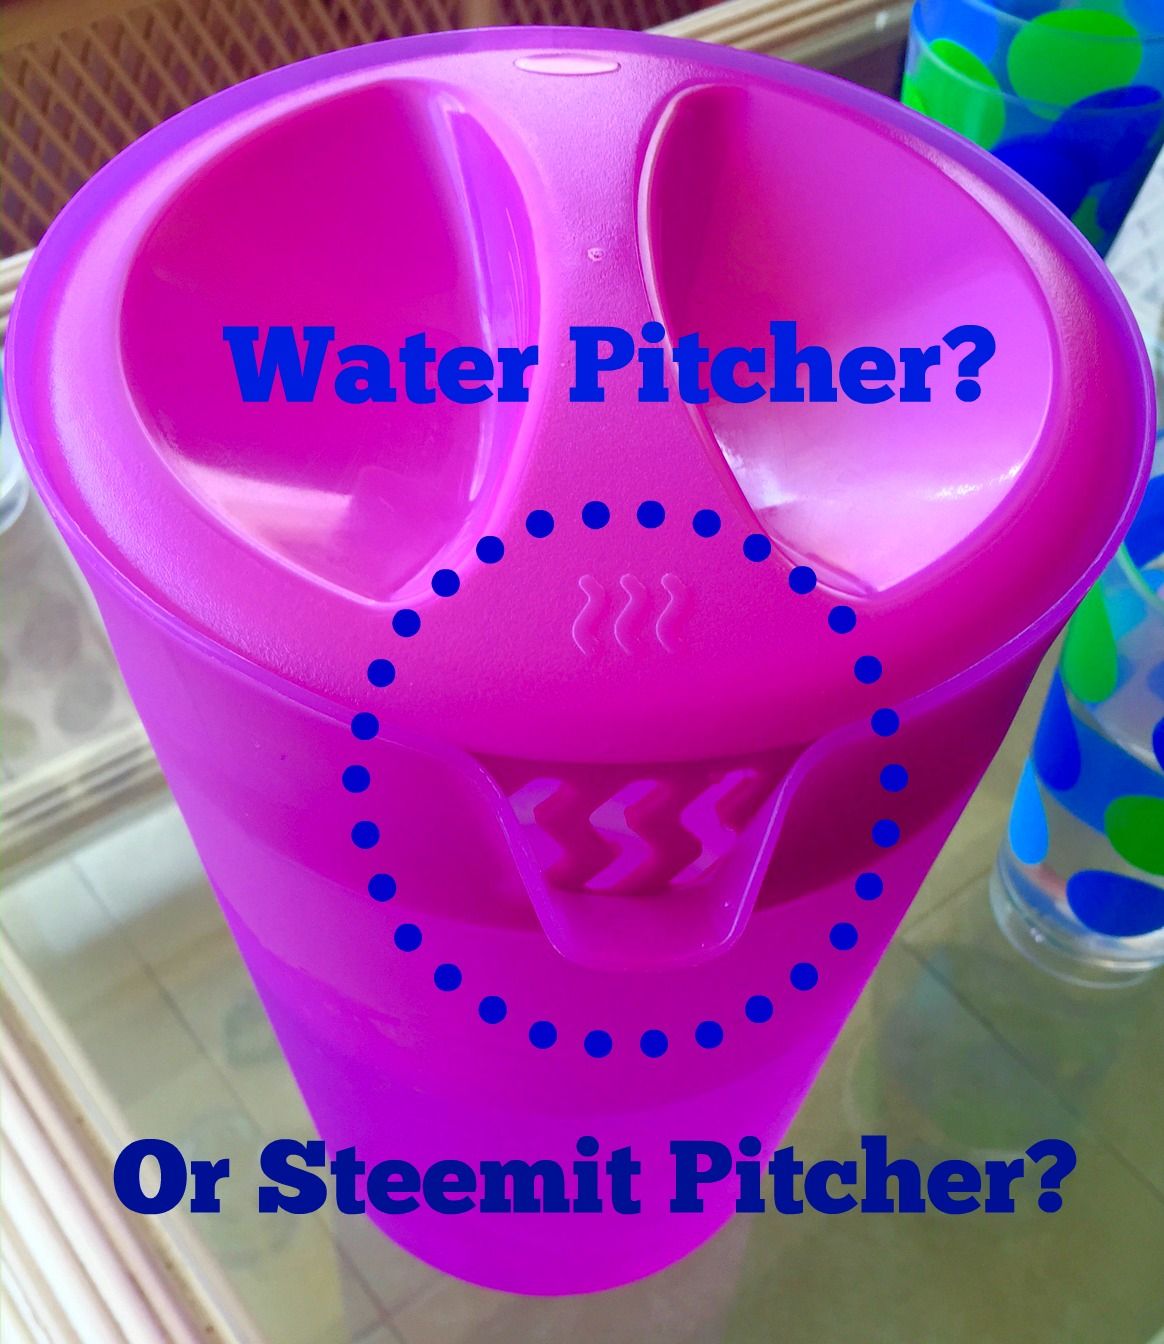 steemit-pitcher.jpg